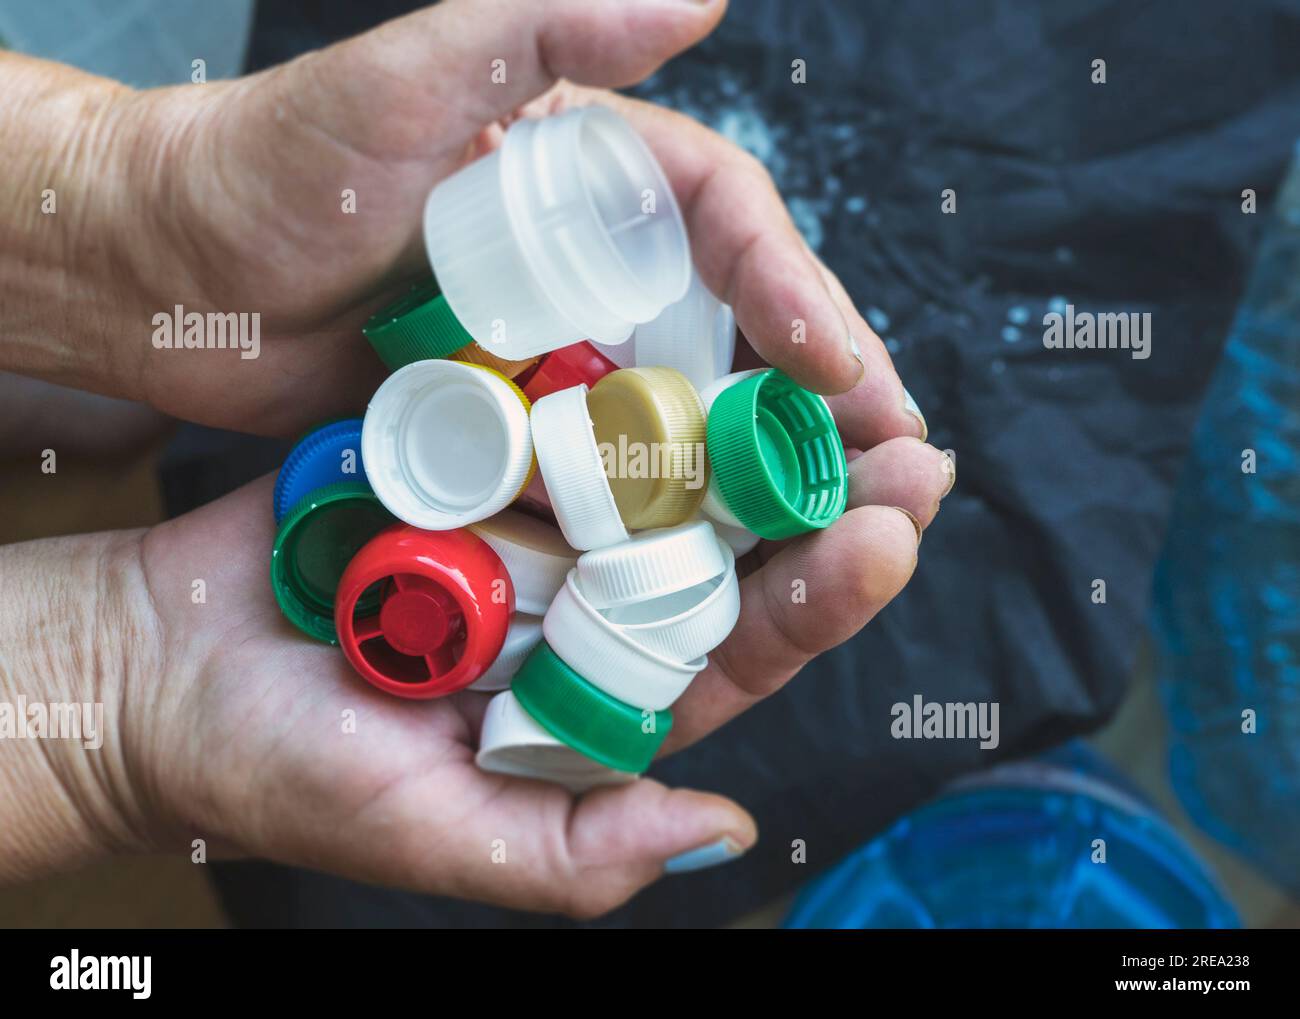 Vertikale Makroaufnahme eines Reagenzglases mit Mikroplastik, das vom Strand gesammelt wurde. Konzept der Wasserverschmutzung und der Industrieabfallbewirtschaftung. Stockfoto